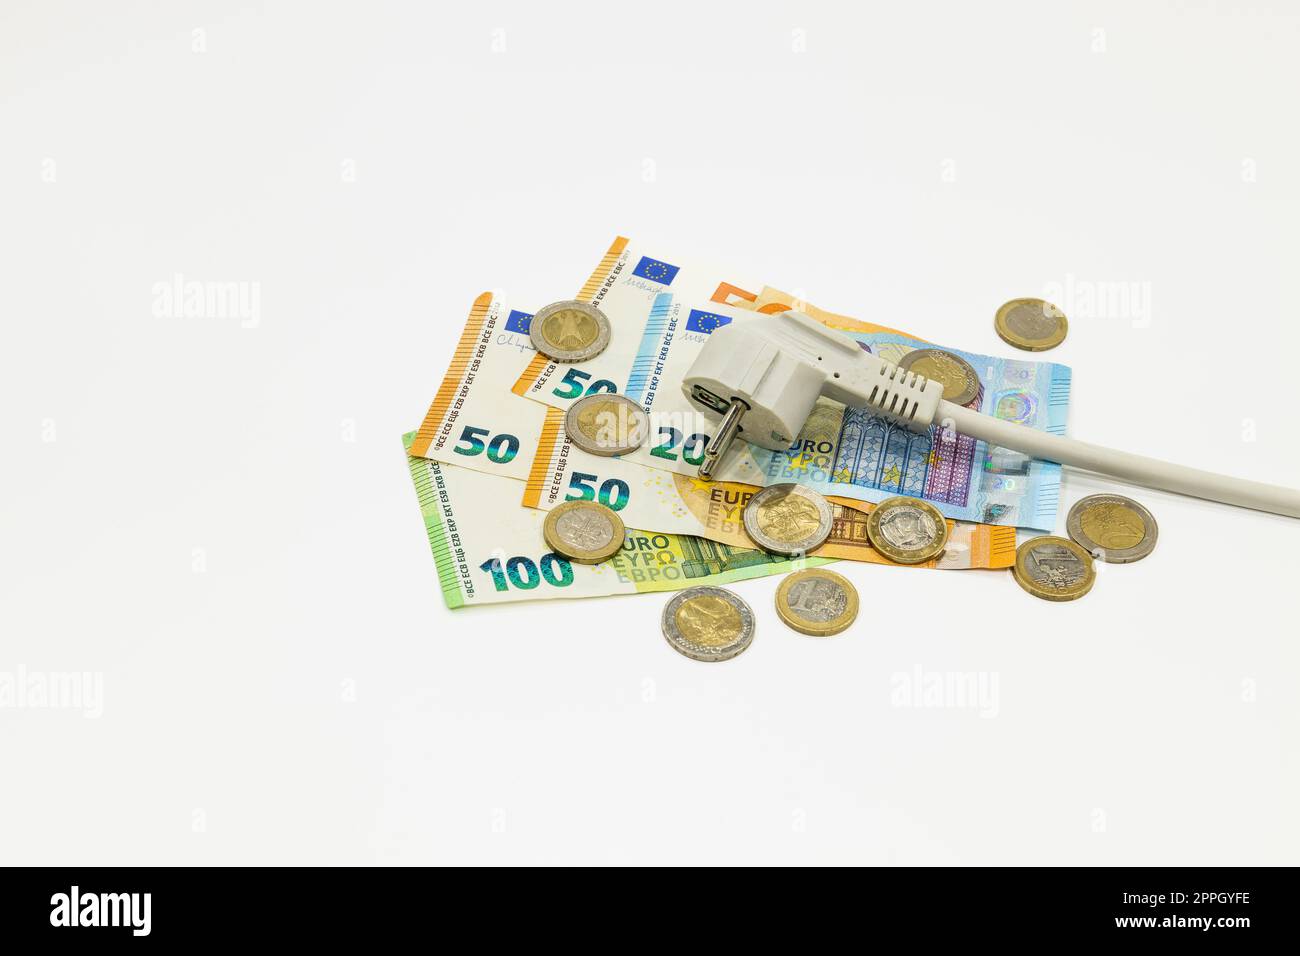 L'alimentazione elettrica si collega alle banconote e alle monete in euro. Concetto di costi di elettricità costosi Foto Stock